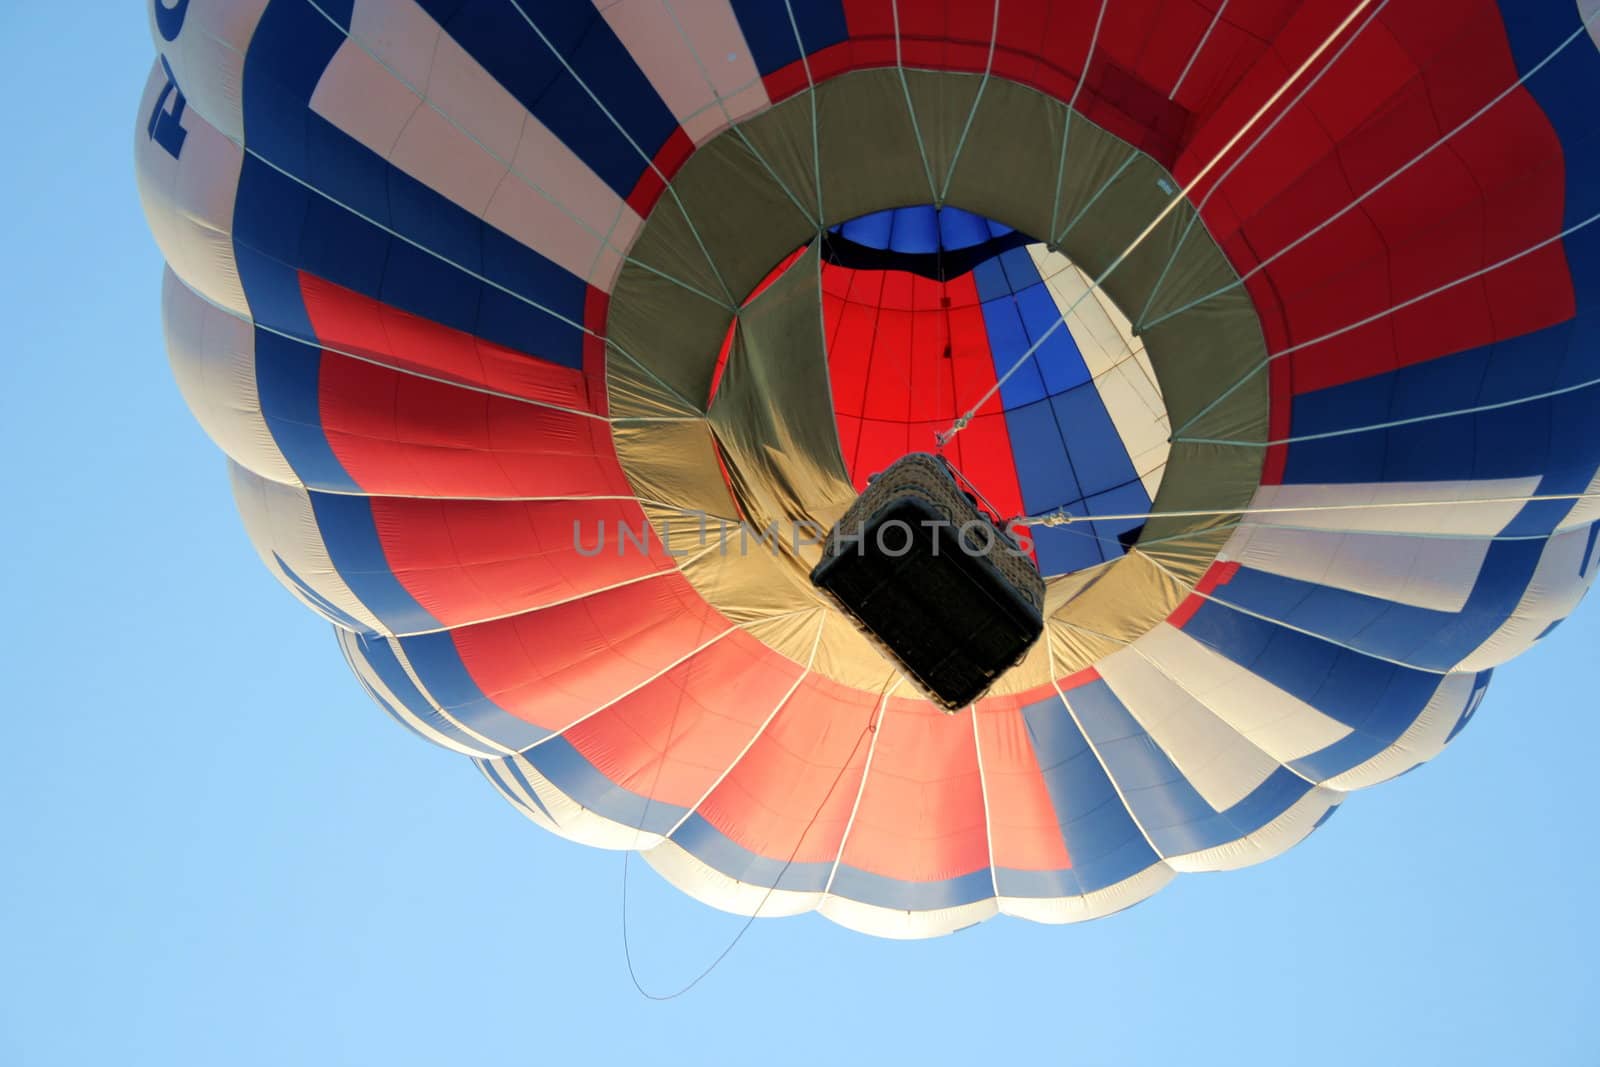 hot-air balloon 2 by ichip